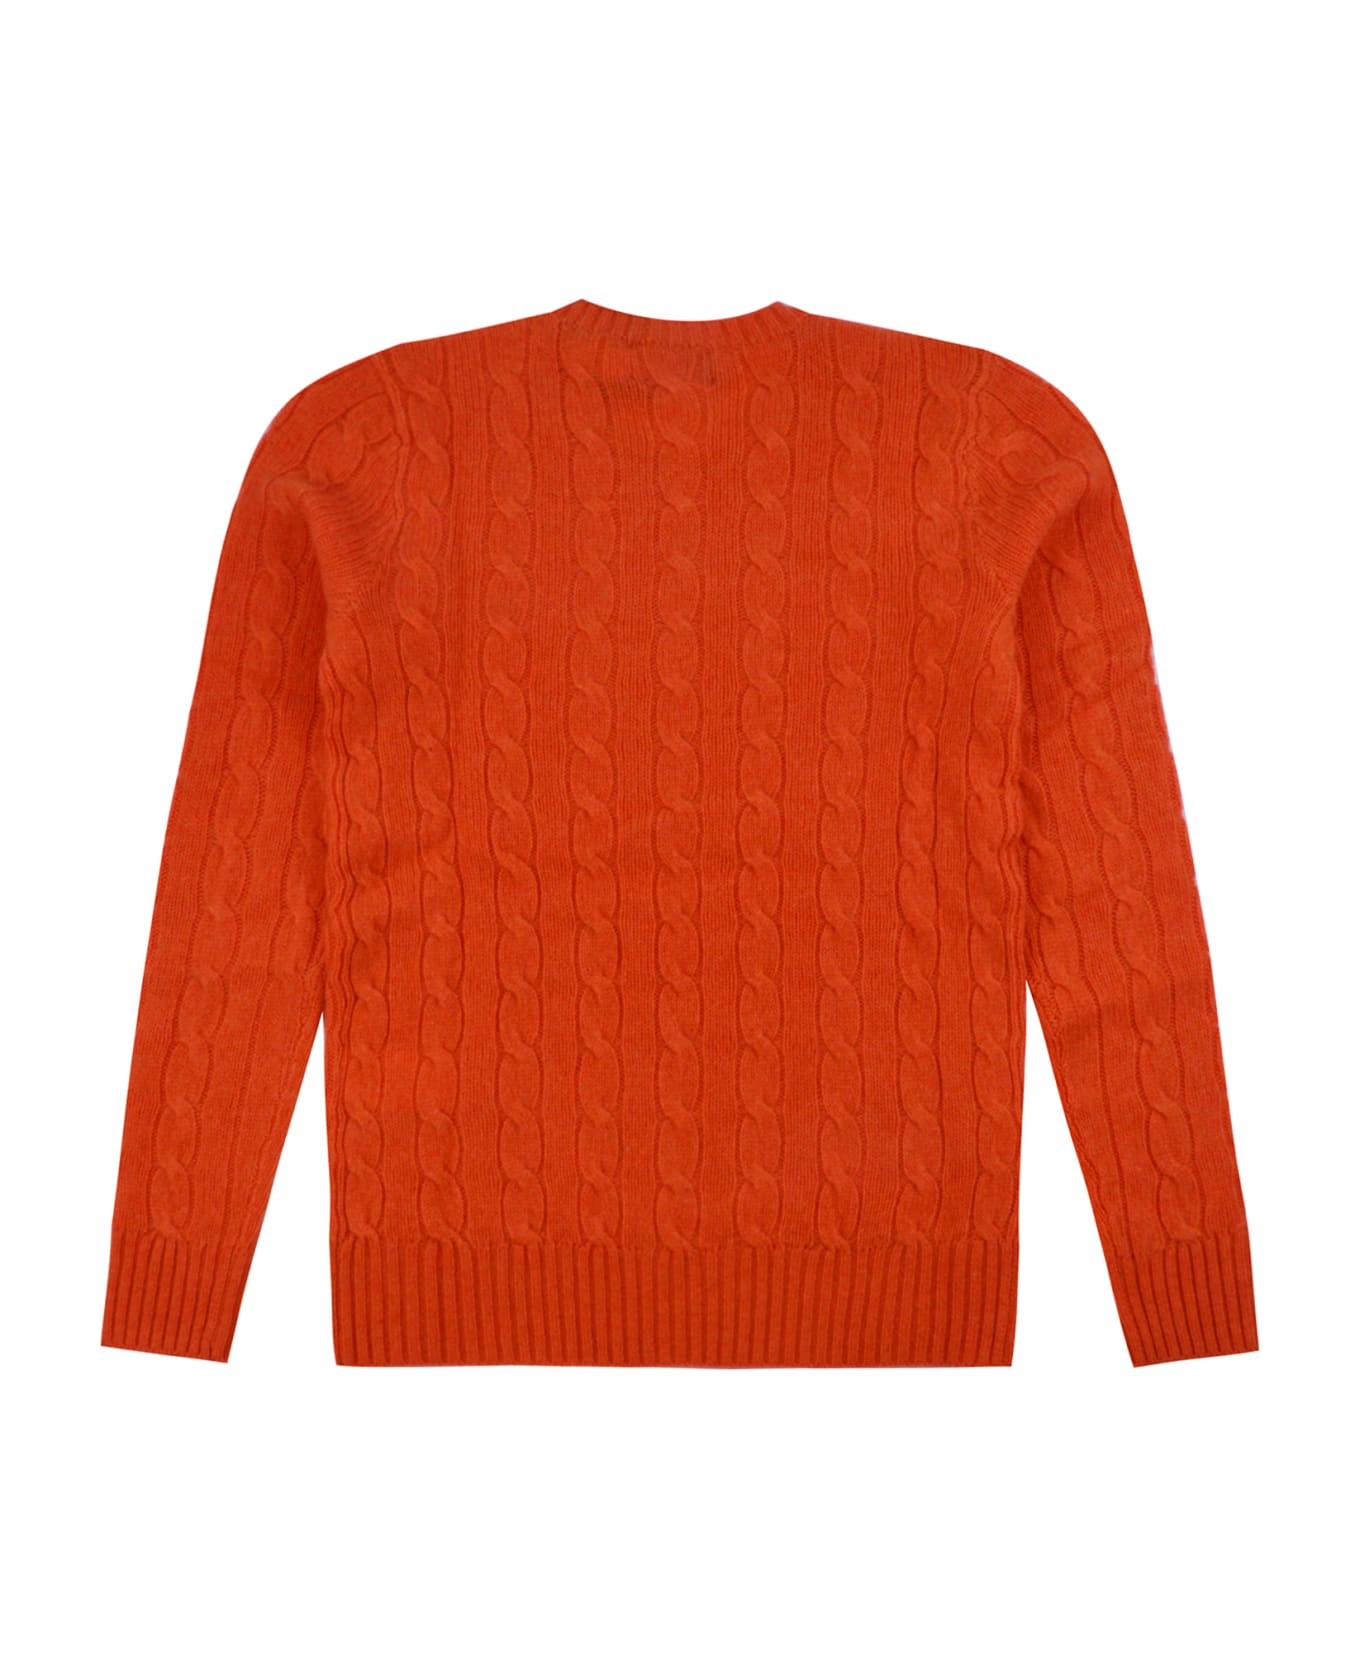 Polo Ralph Lauren Melange Orange Flannel Wool And Cashmere Braided Sweater - Orange